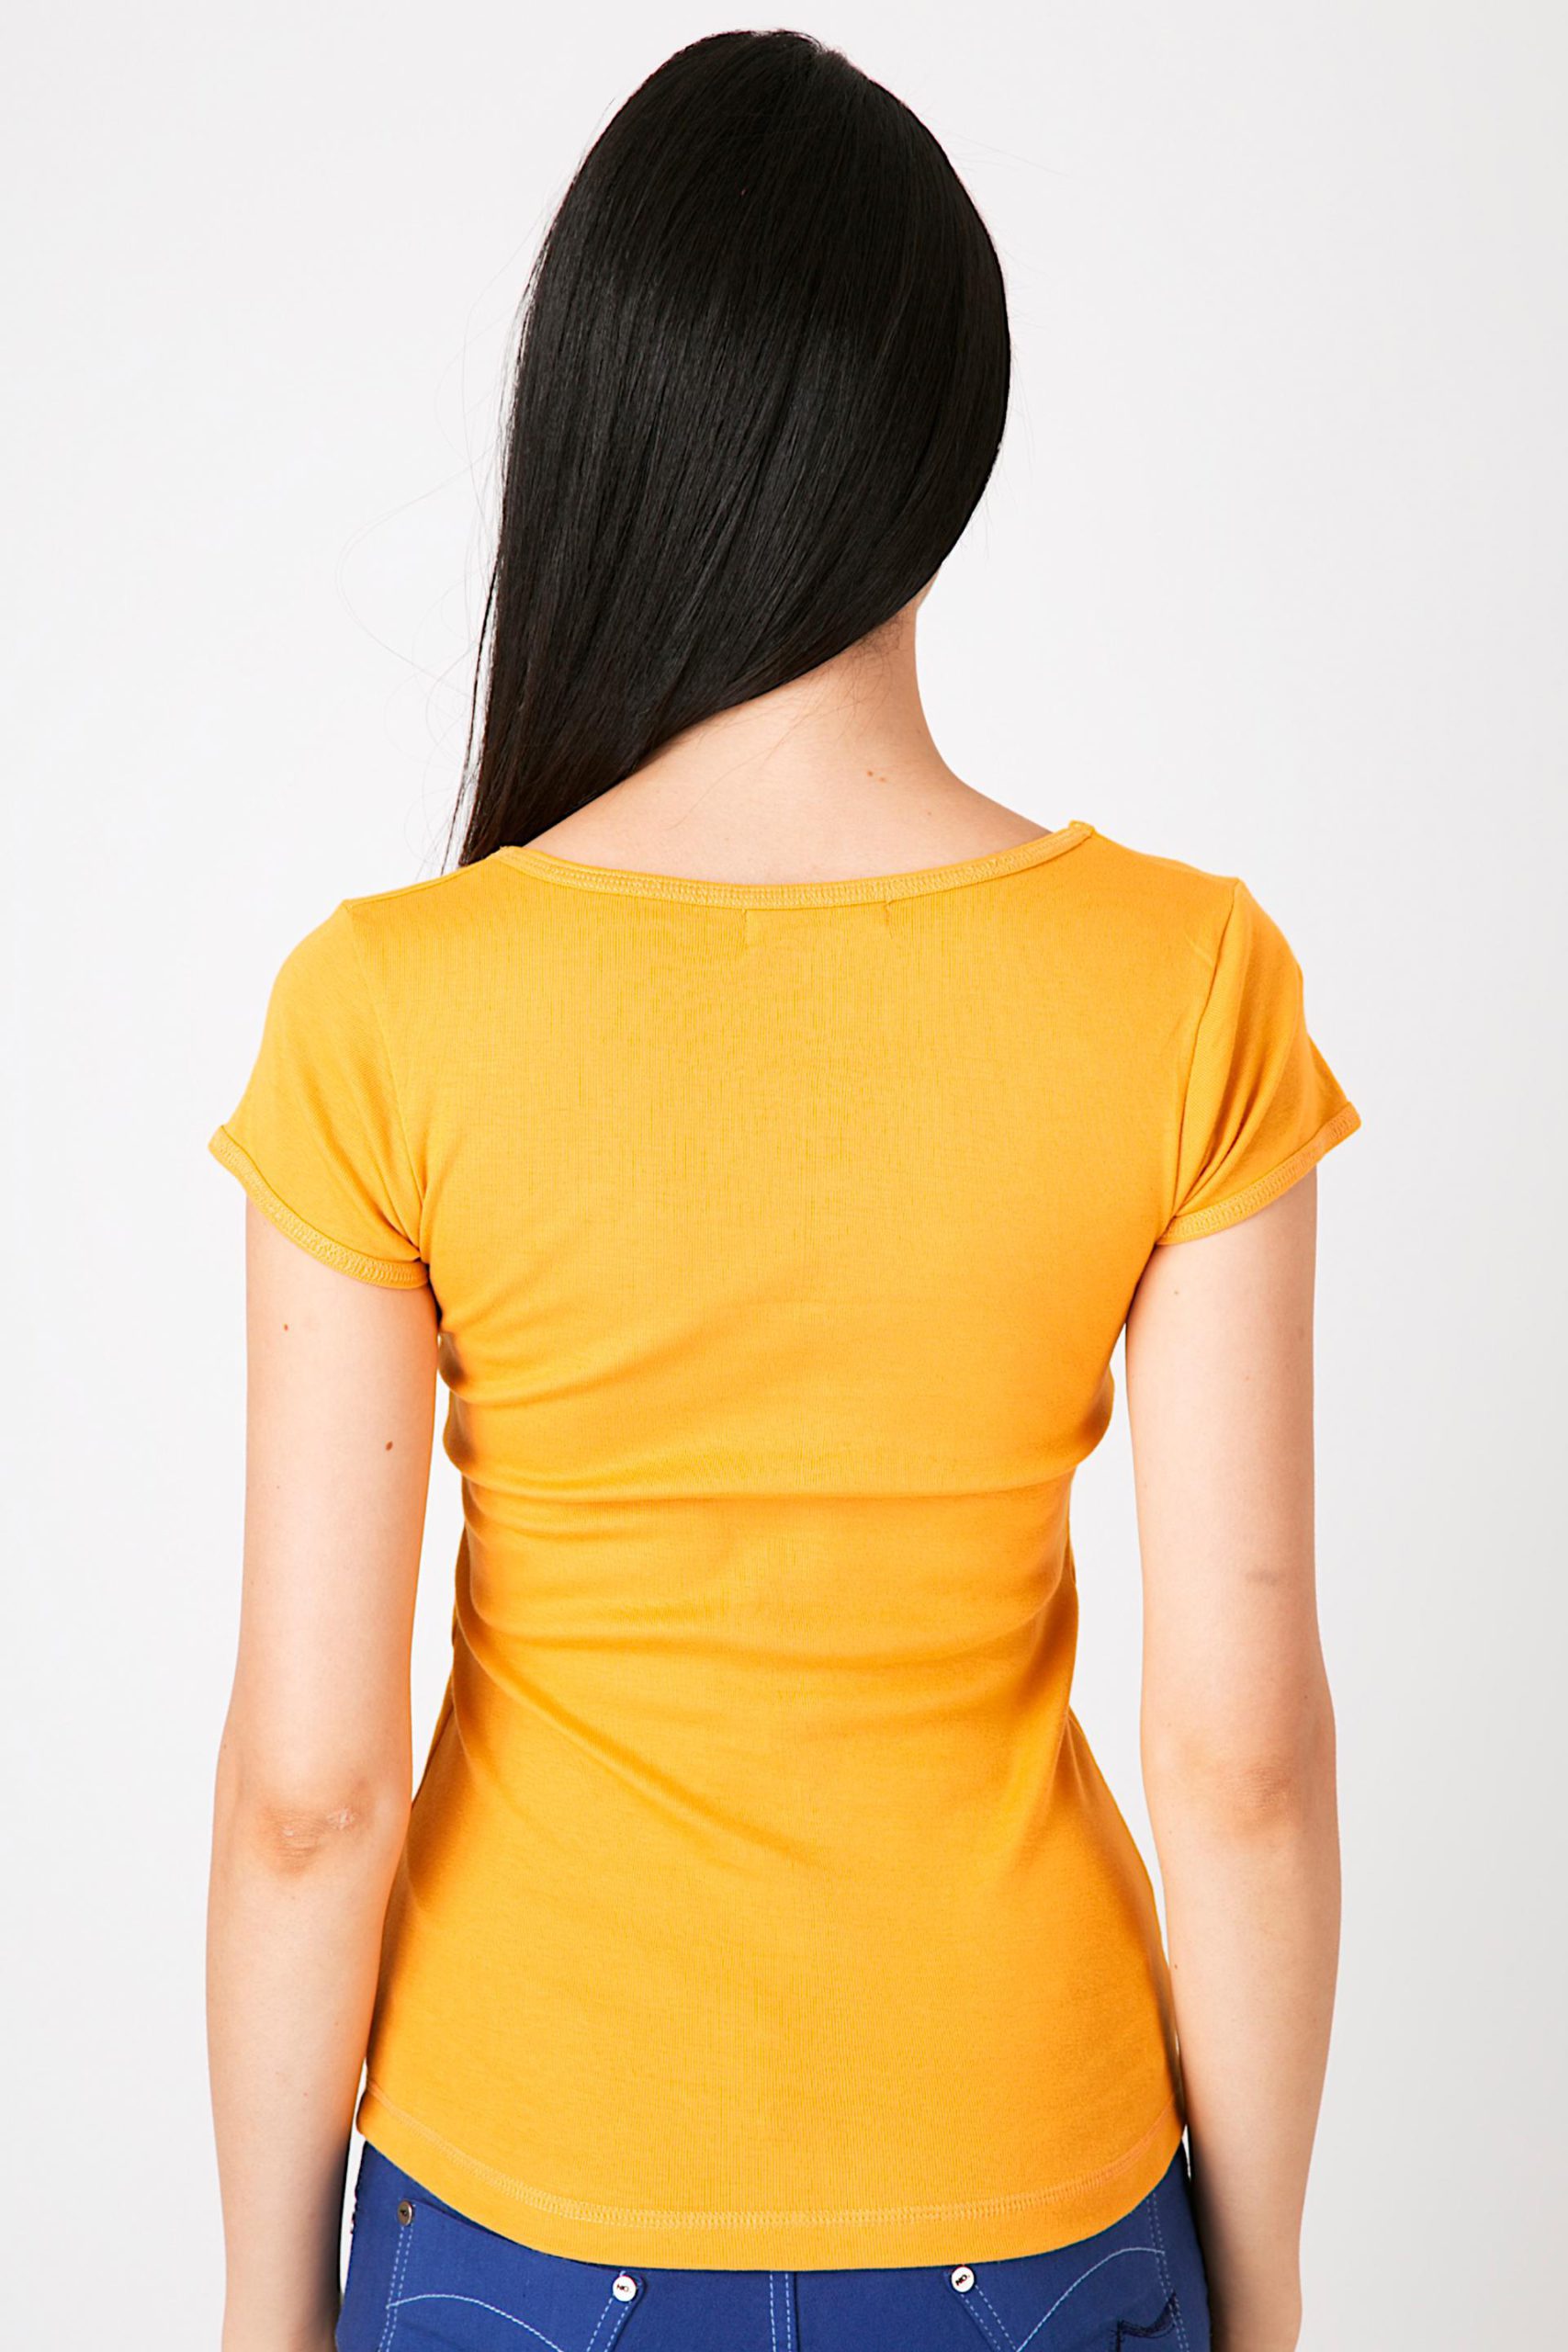 เสื้อยืดผ้าริบ คอยูแขนเบิ้ล สีเหลือง (3)